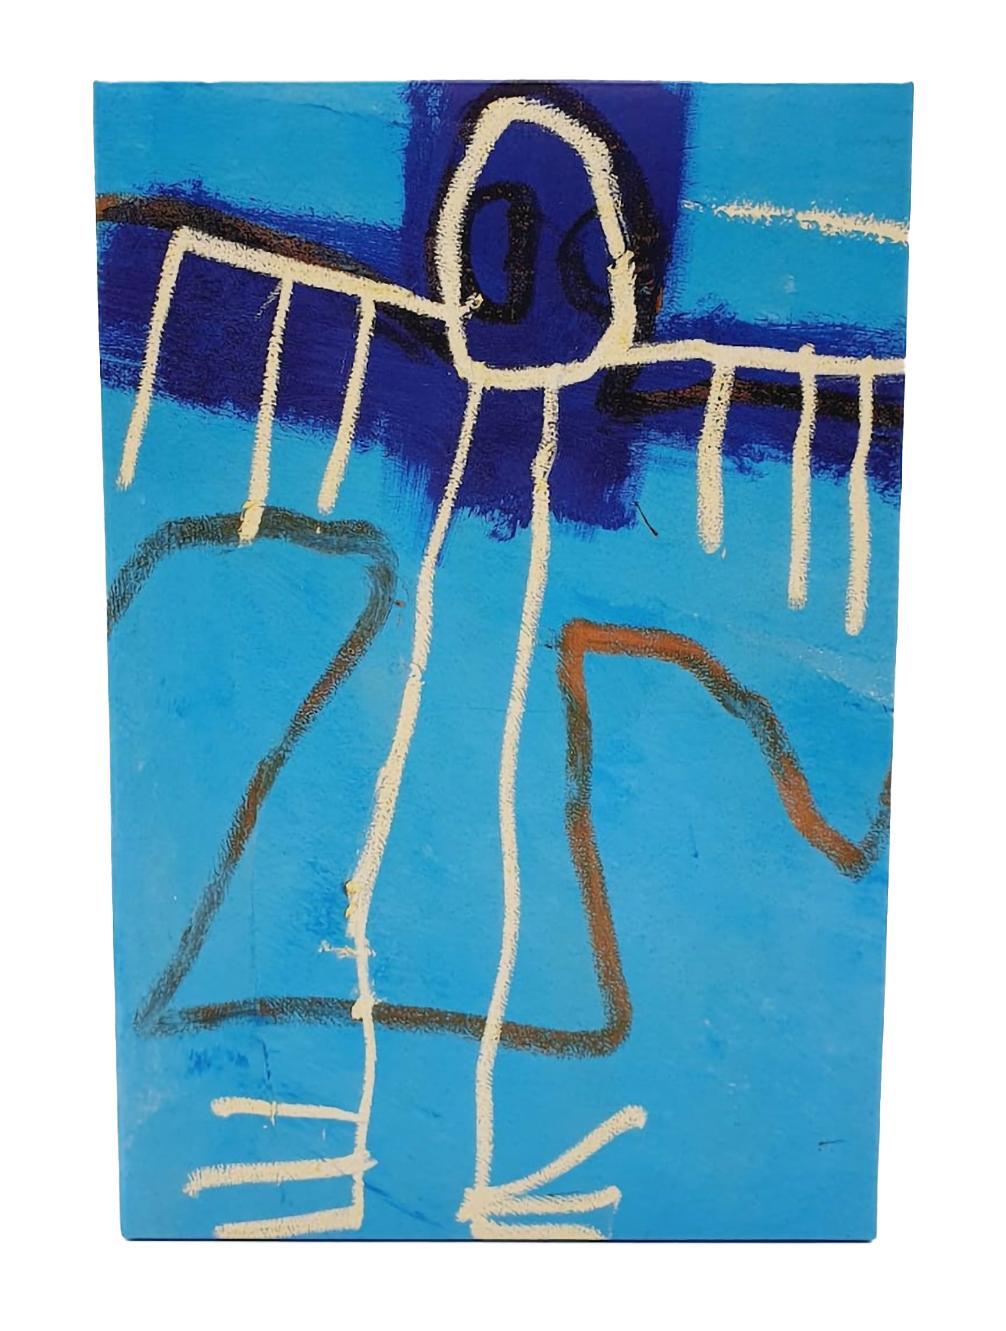 Jean-Michel Basquiat Bearbrick Vinyl Figures : Lot de deux (400% & 100%) :
Une pièce de collection unique et intemporelle de Basquiat, en édition limitée, dont la marque et la licence ont été déposées par la succession de Jean-Michel Basquiat. La